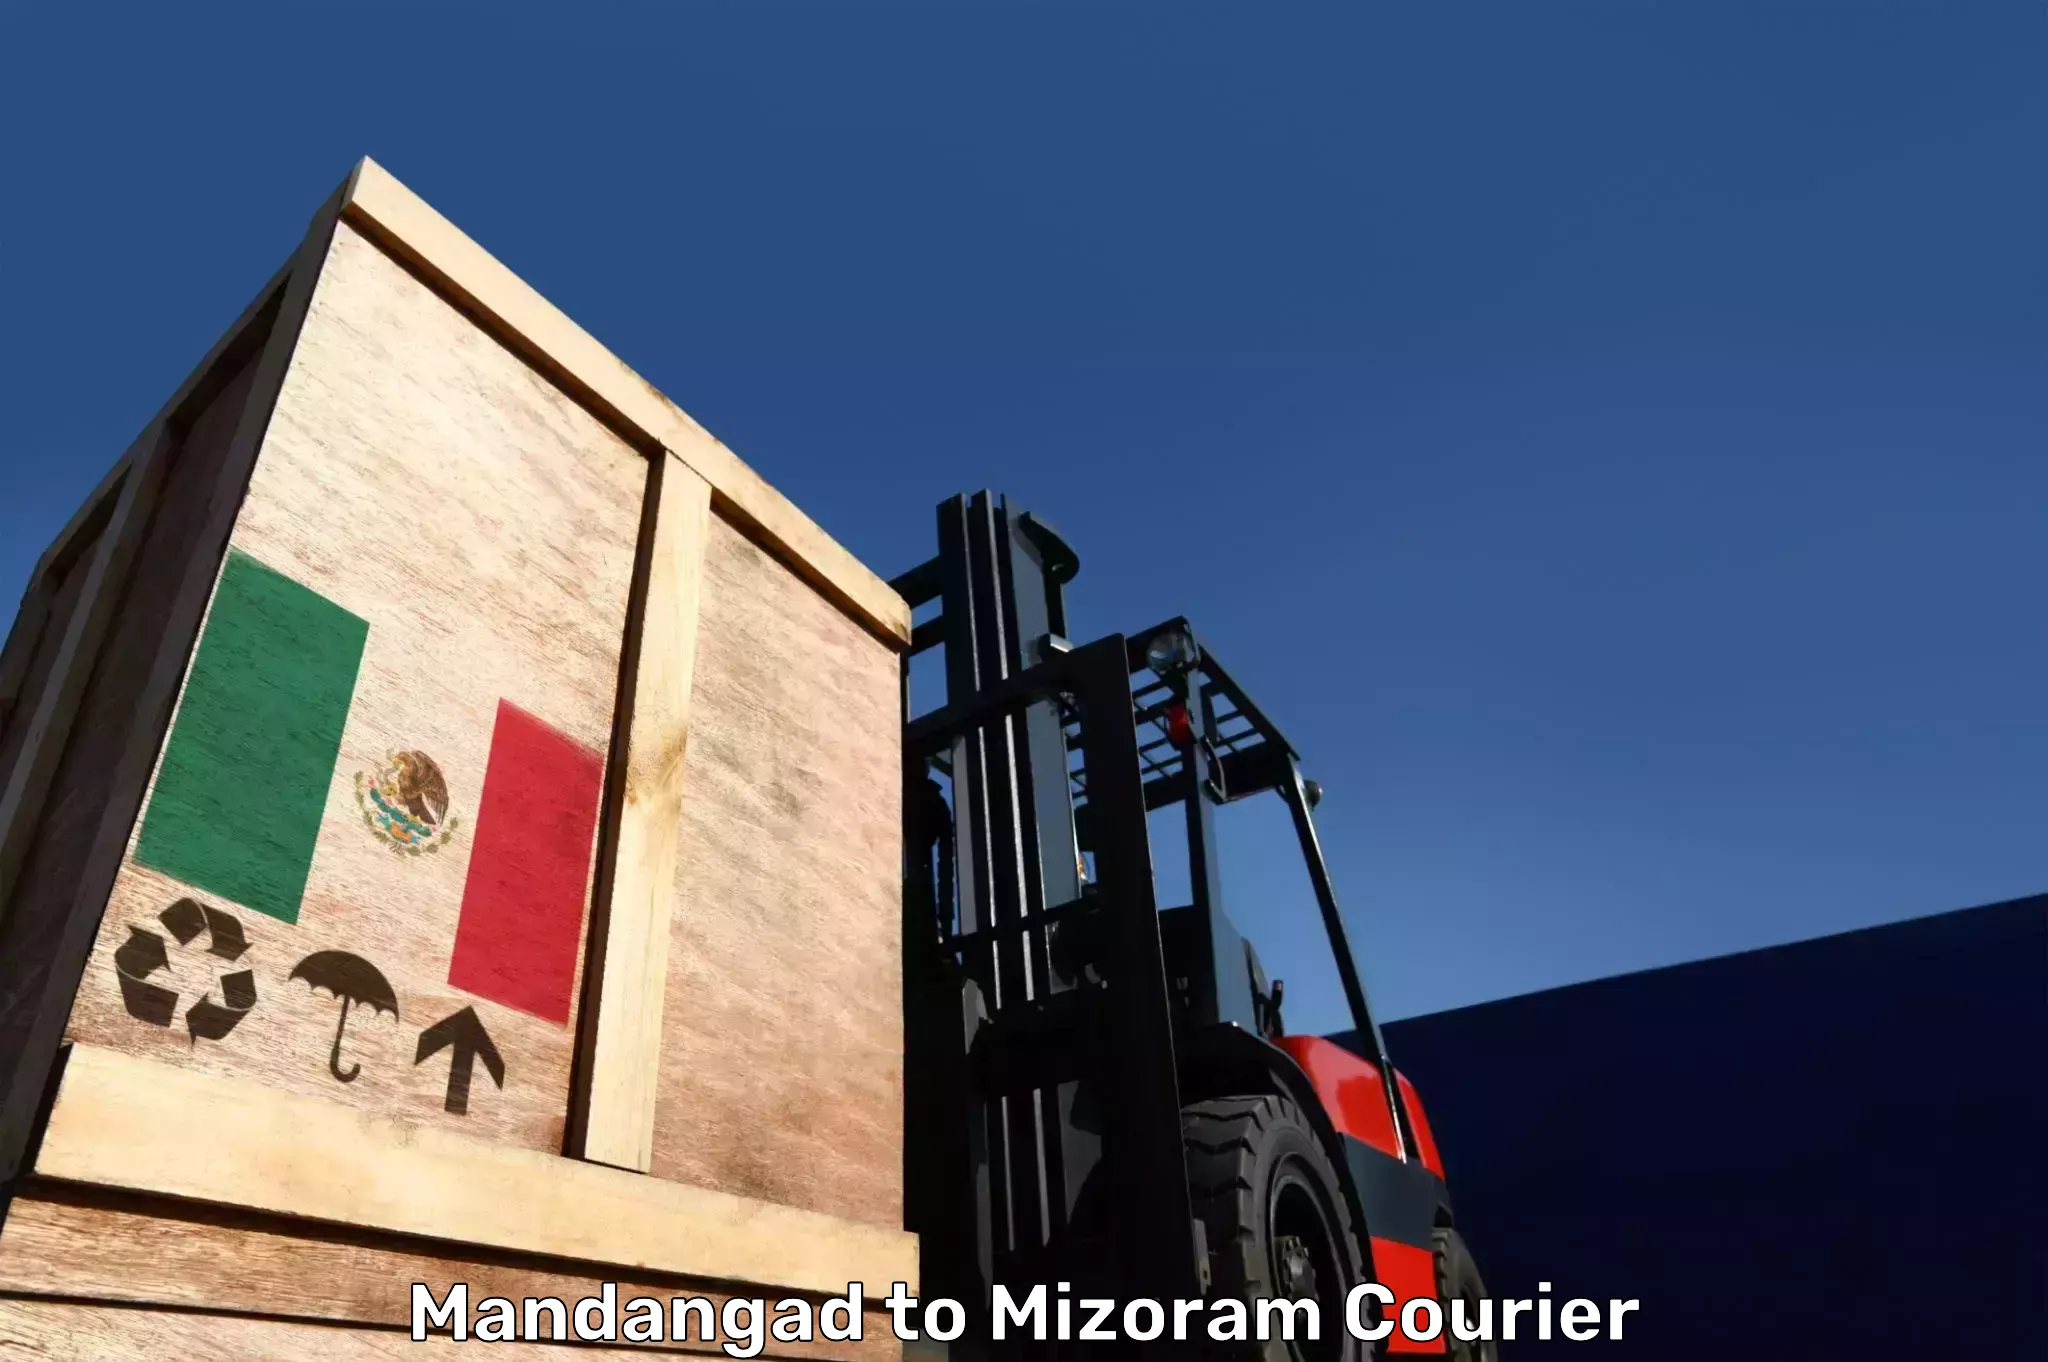 Luggage transfer service Mandangad to Mizoram